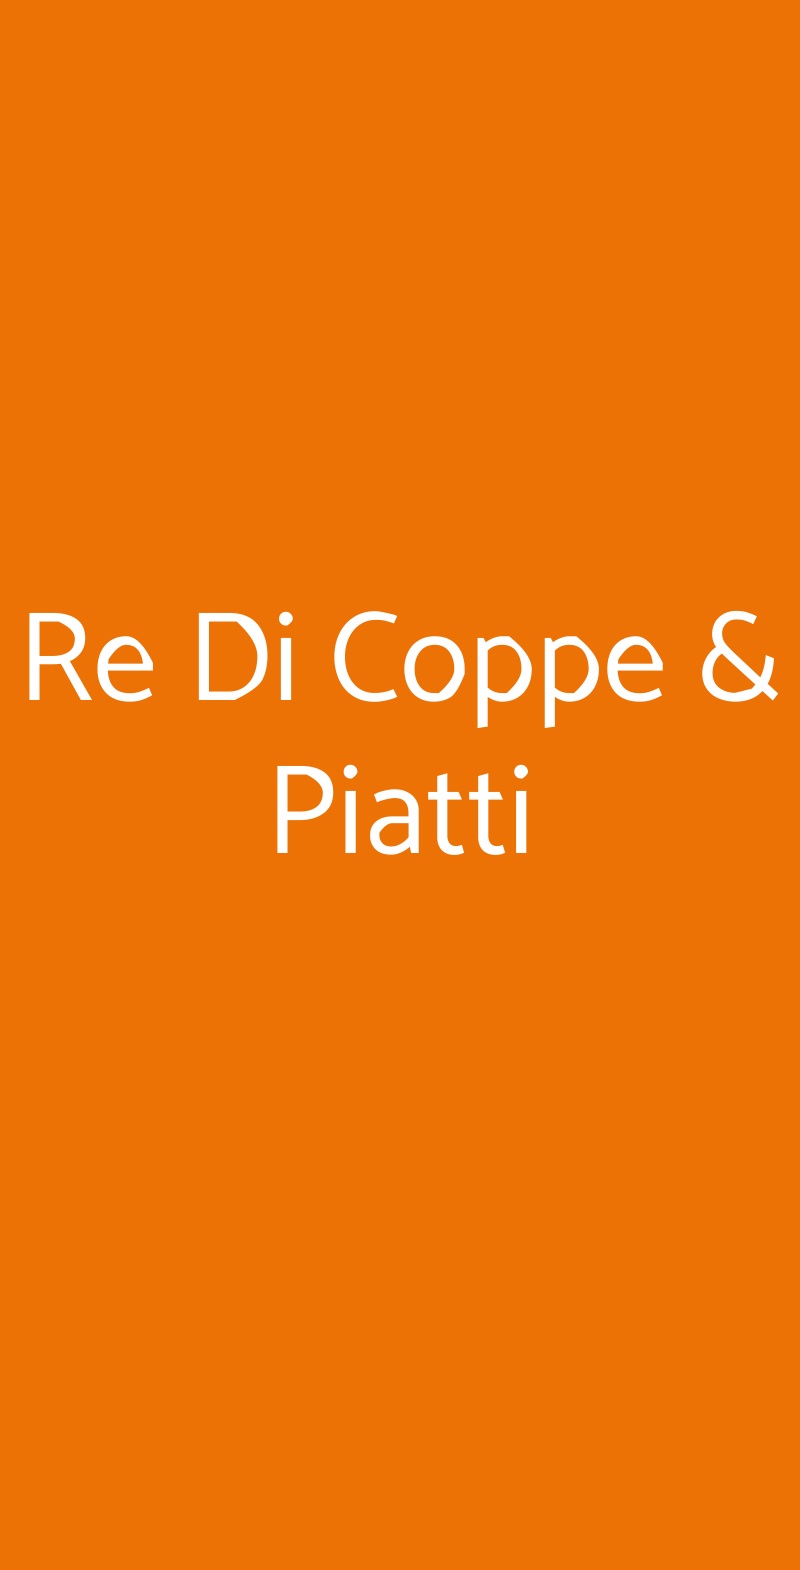 Re Di Coppe & Piatti Milano menù 1 pagina